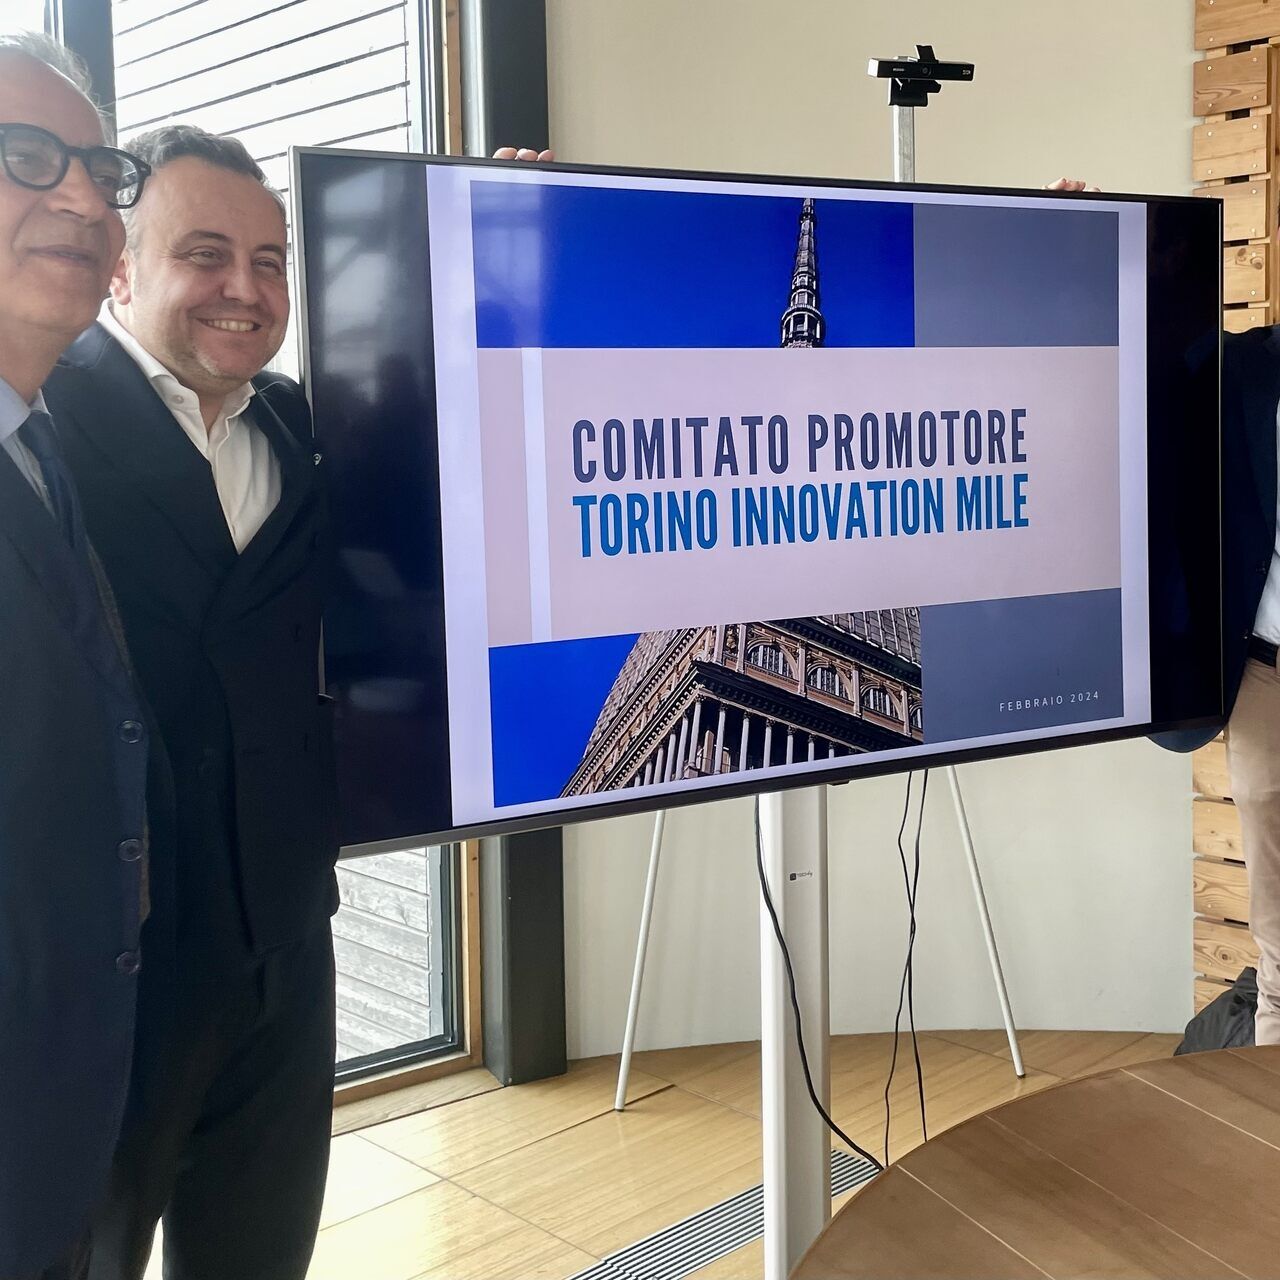 Torino Innovation Mile: koordinacija Odbora za promicanje bit će povjerena predsjedniku Davideu Canavesiju, također na čelu Nexta, i dvojici potpredsjednika, Stefanu Corgnatiju, izabranom rektoru Politehnike u Torinu, i Giacomu Portasu, predsjedniku Parka okoliša